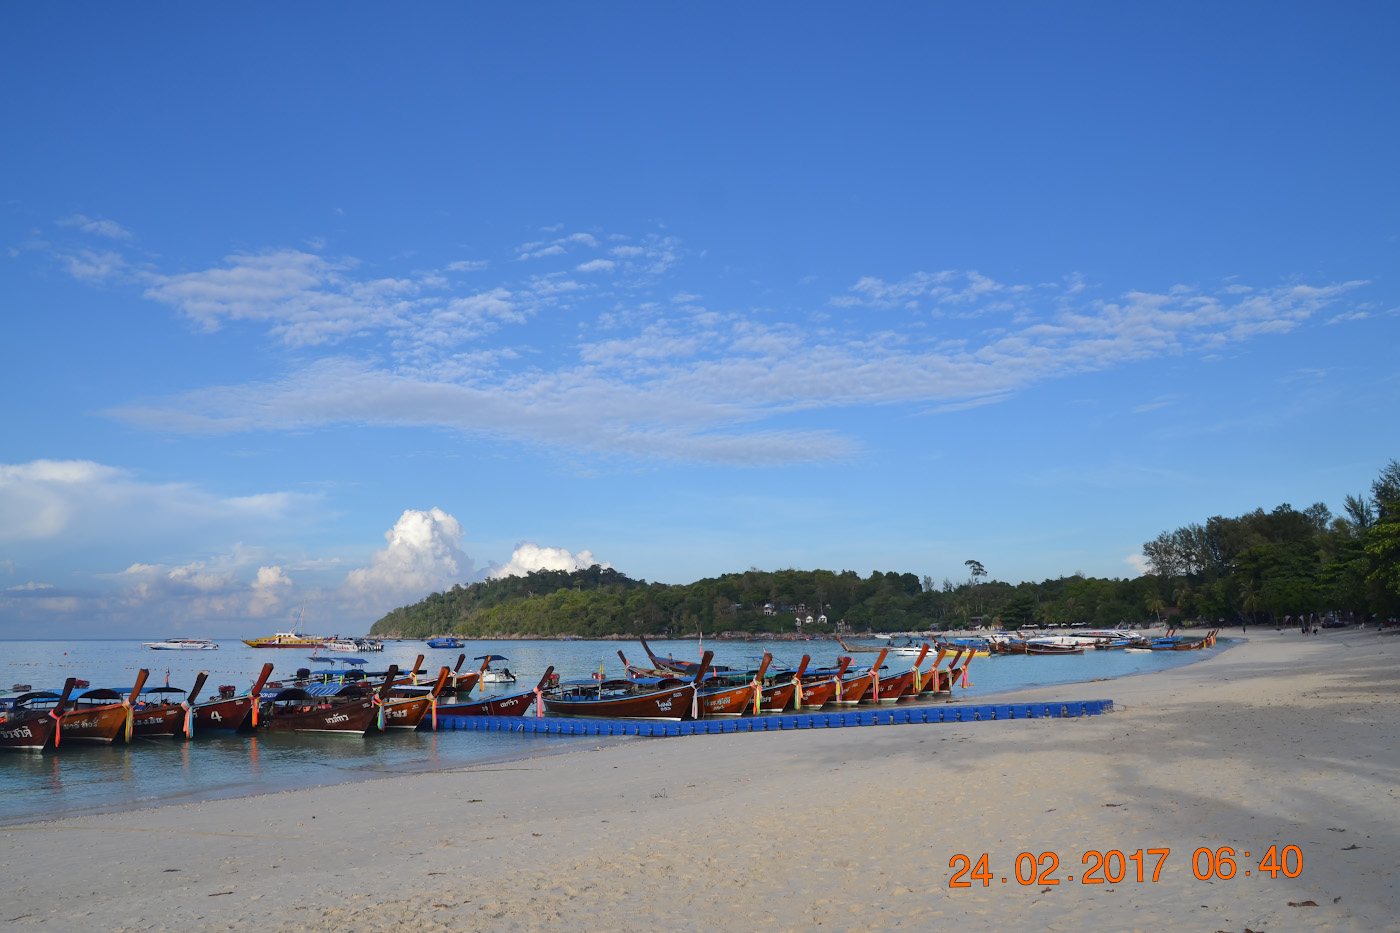 Фотография 9. Вид на пляж Паттайя на острове Ко Липе. Стоит ли ехать отдыхать в Таиланд самостоятельно? 1/400, 10.0, 100, 55.